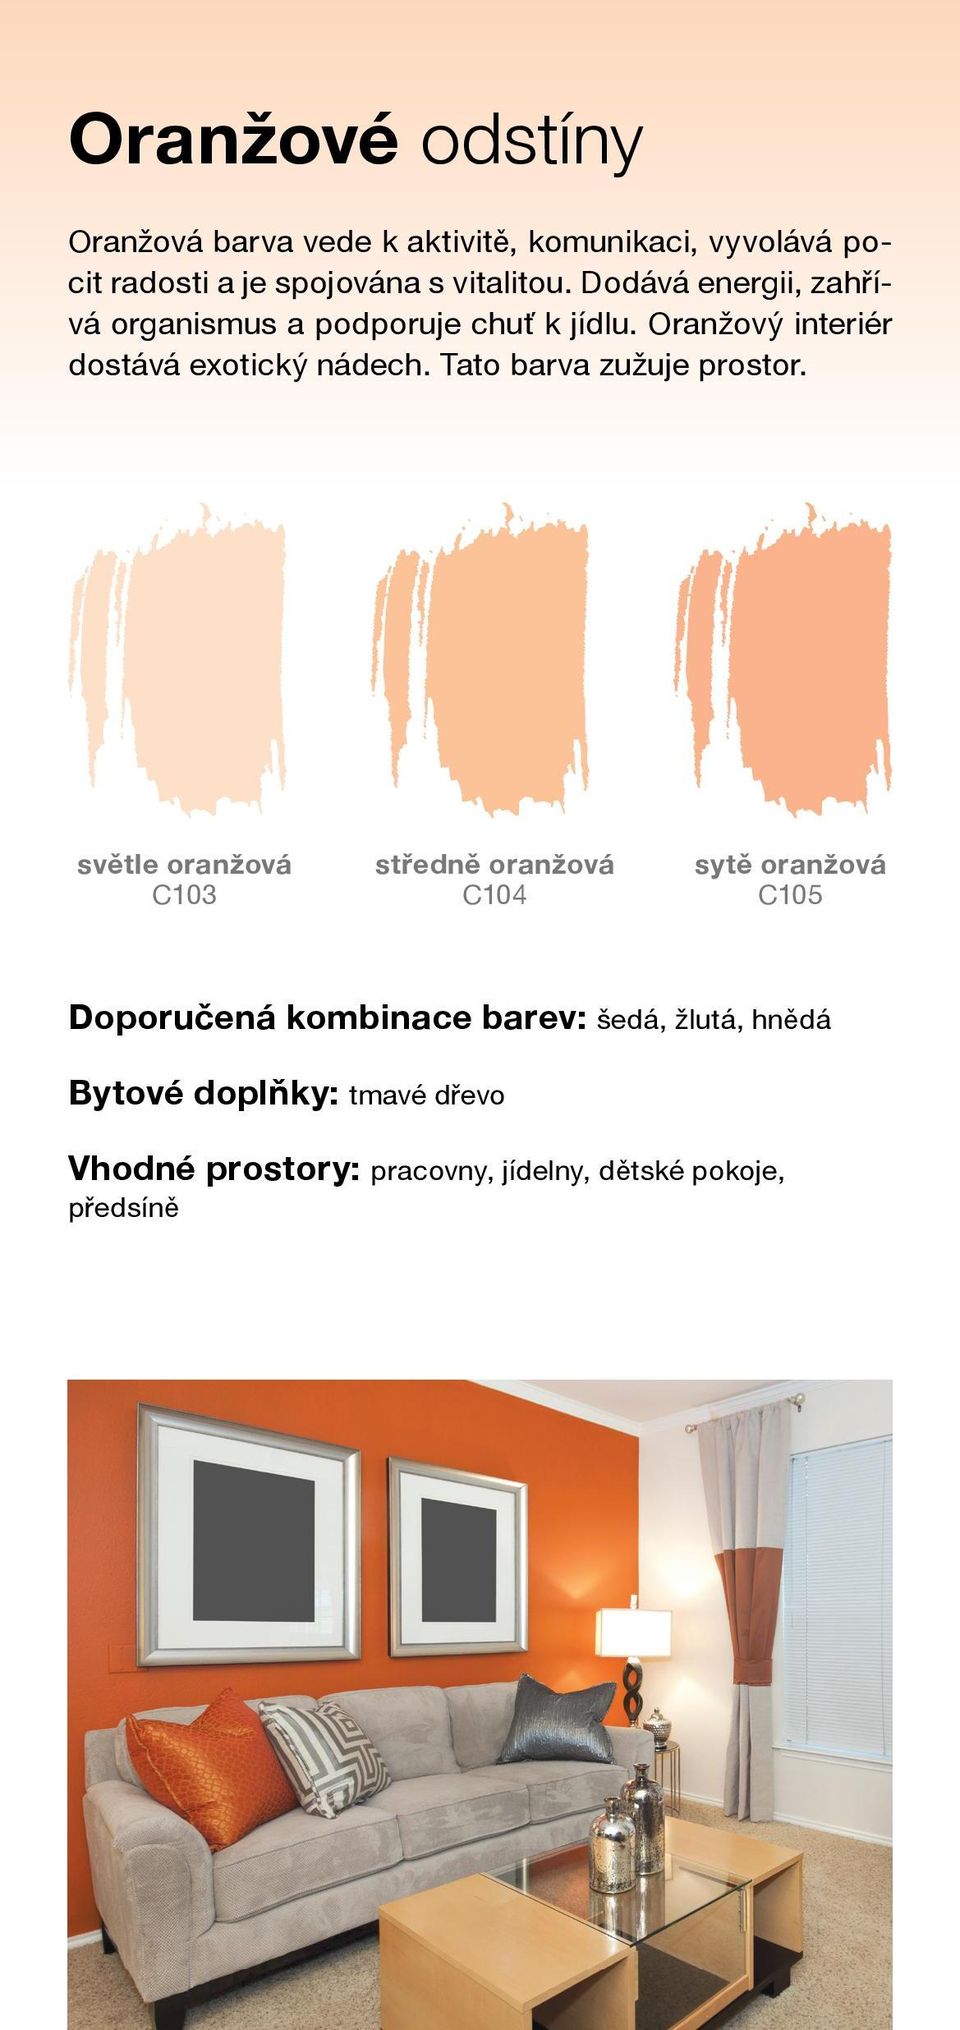 Oranžový interiér dostává exotický nádech. Tato barva zužuje prostor.